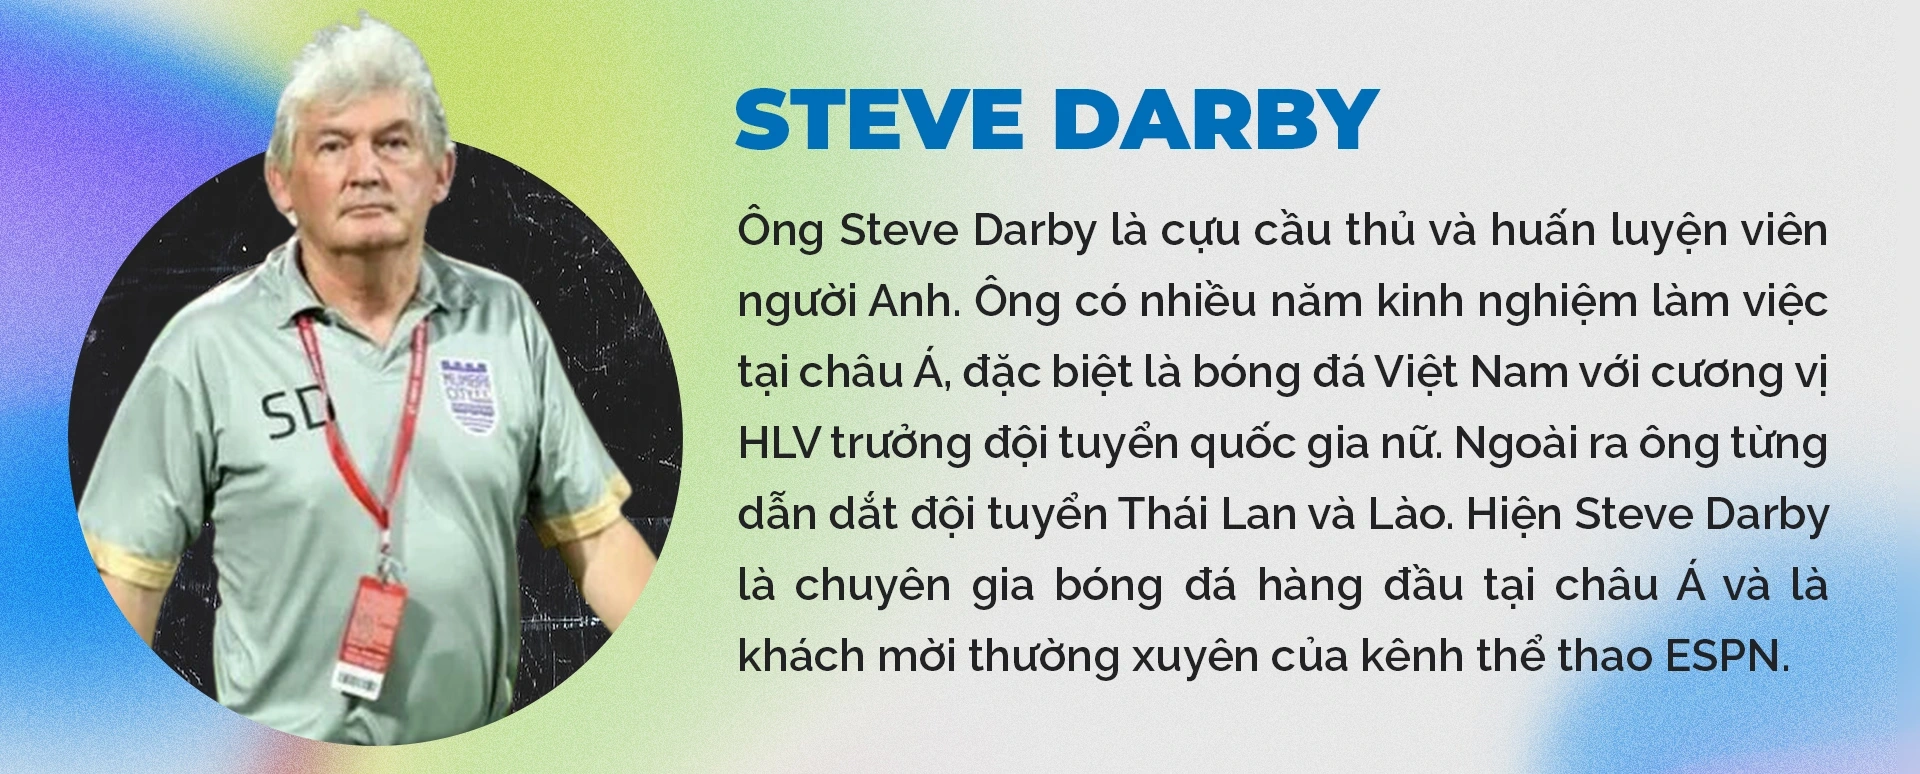 View - Steve Darby: "Cầu thủ Việt đừng nghĩ ra nước ngoài để đánh bóng tên tuổi" | Báo Dân trí